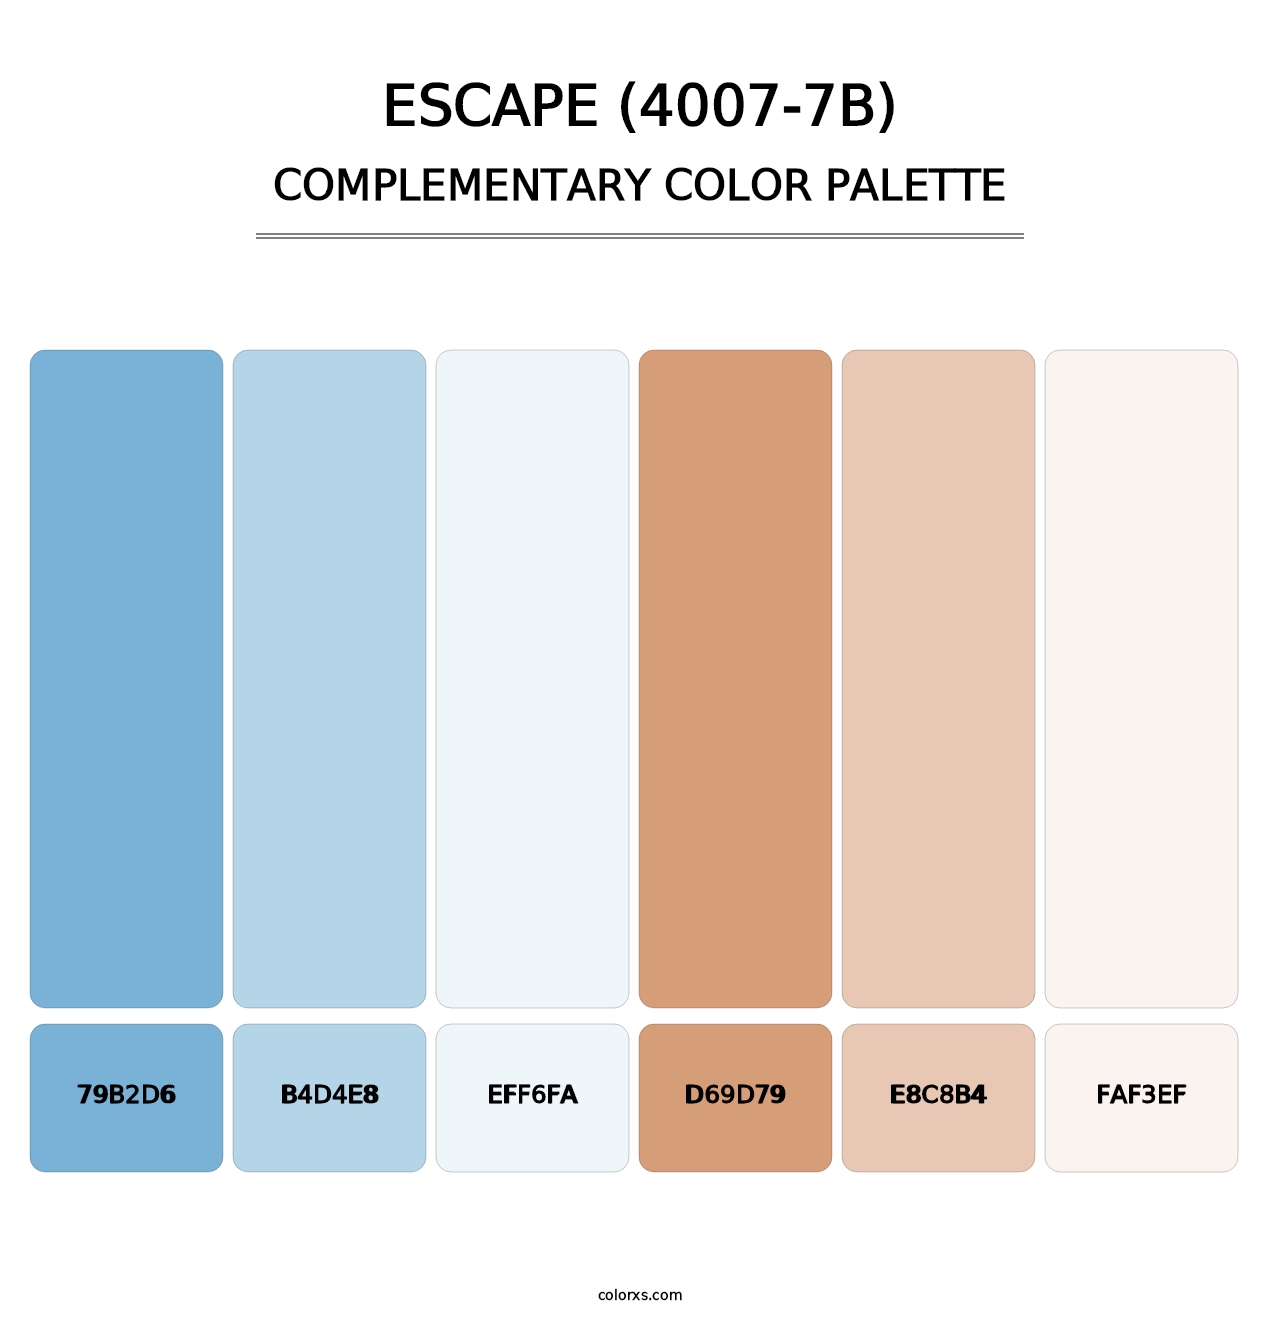 Escape (4007-7B) - Complementary Color Palette